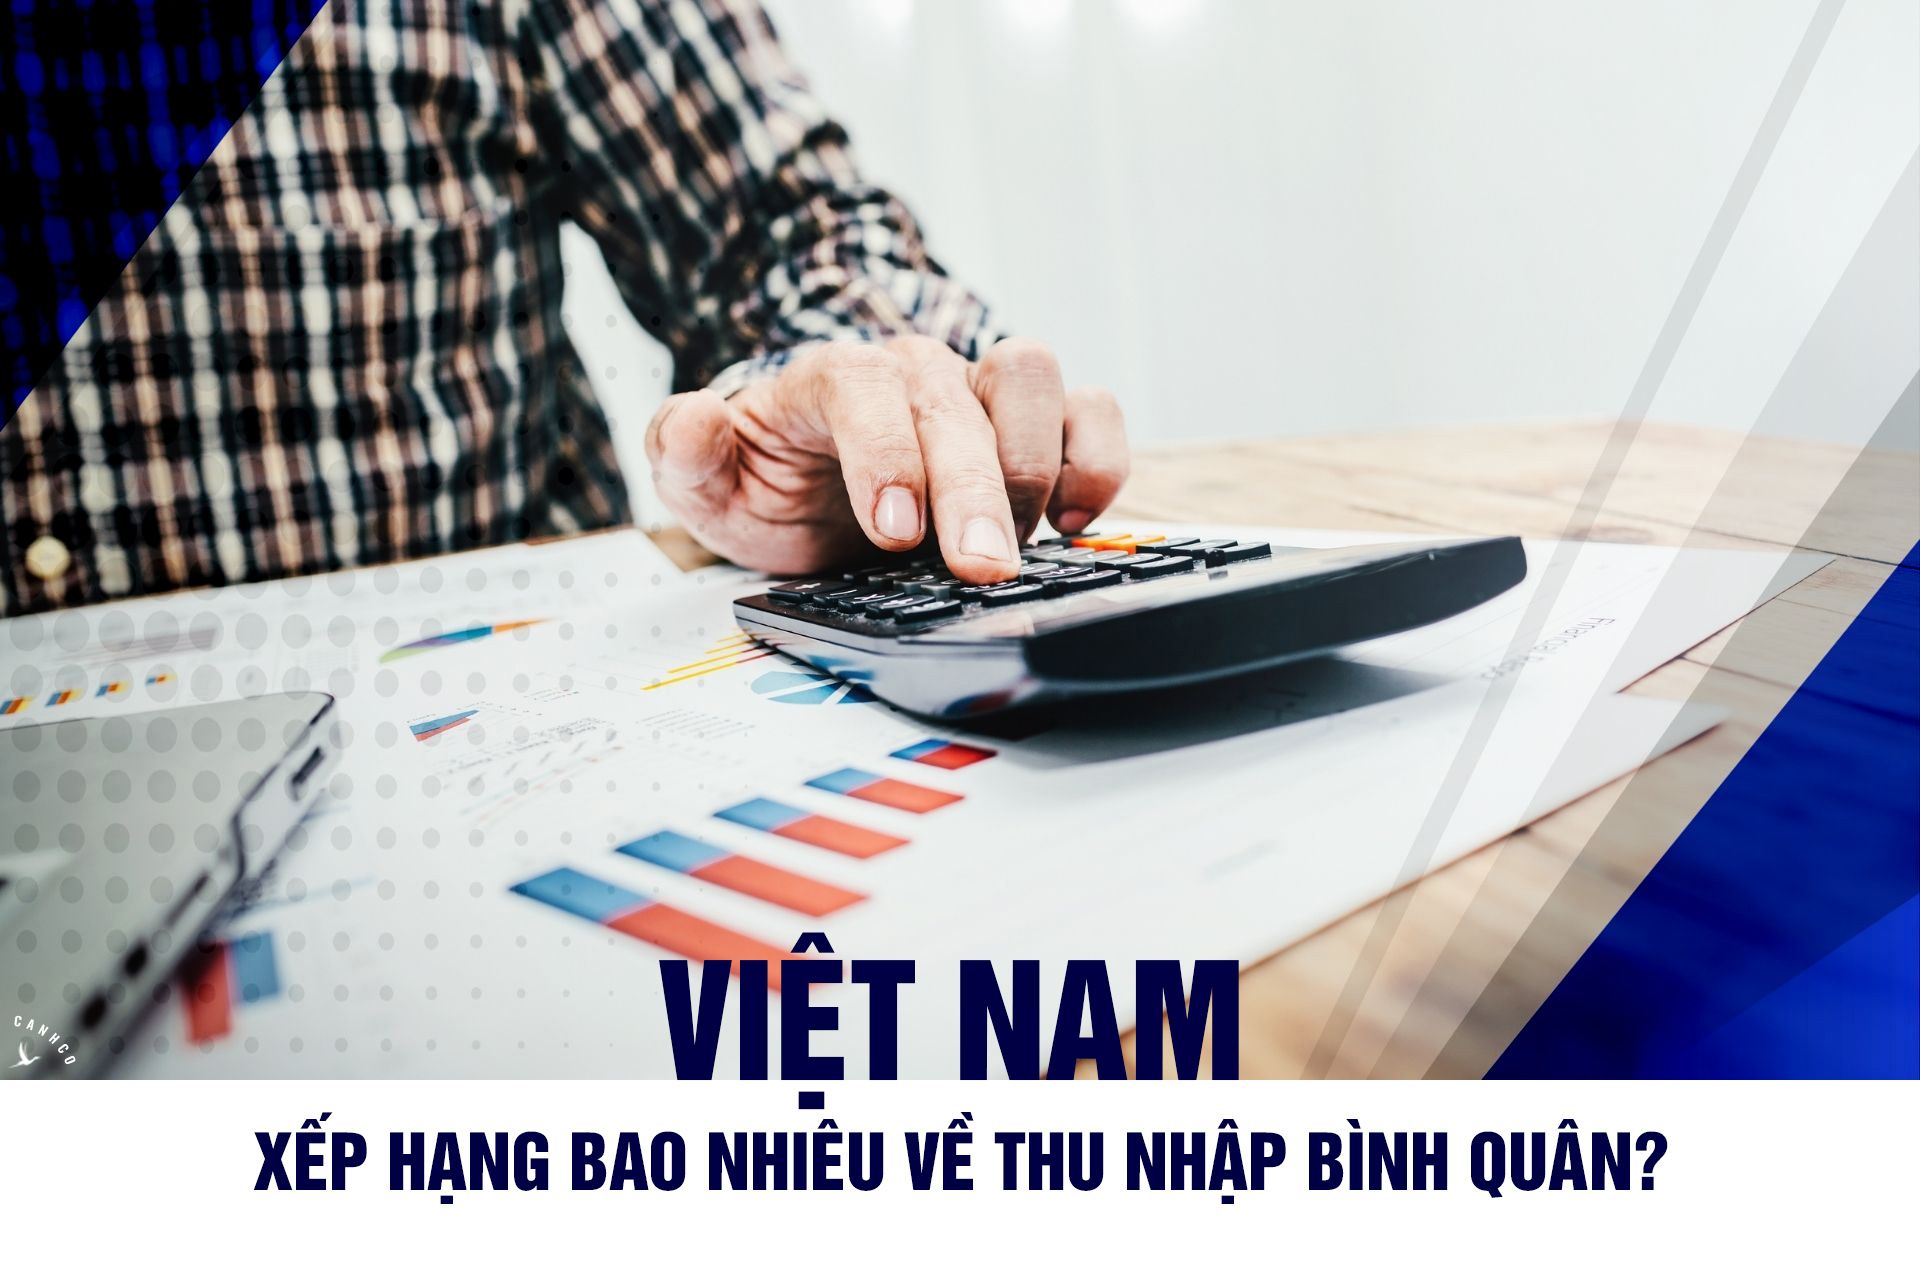 Việt Nam xếp hạng bao nhiêu về thu nhập bình quân?